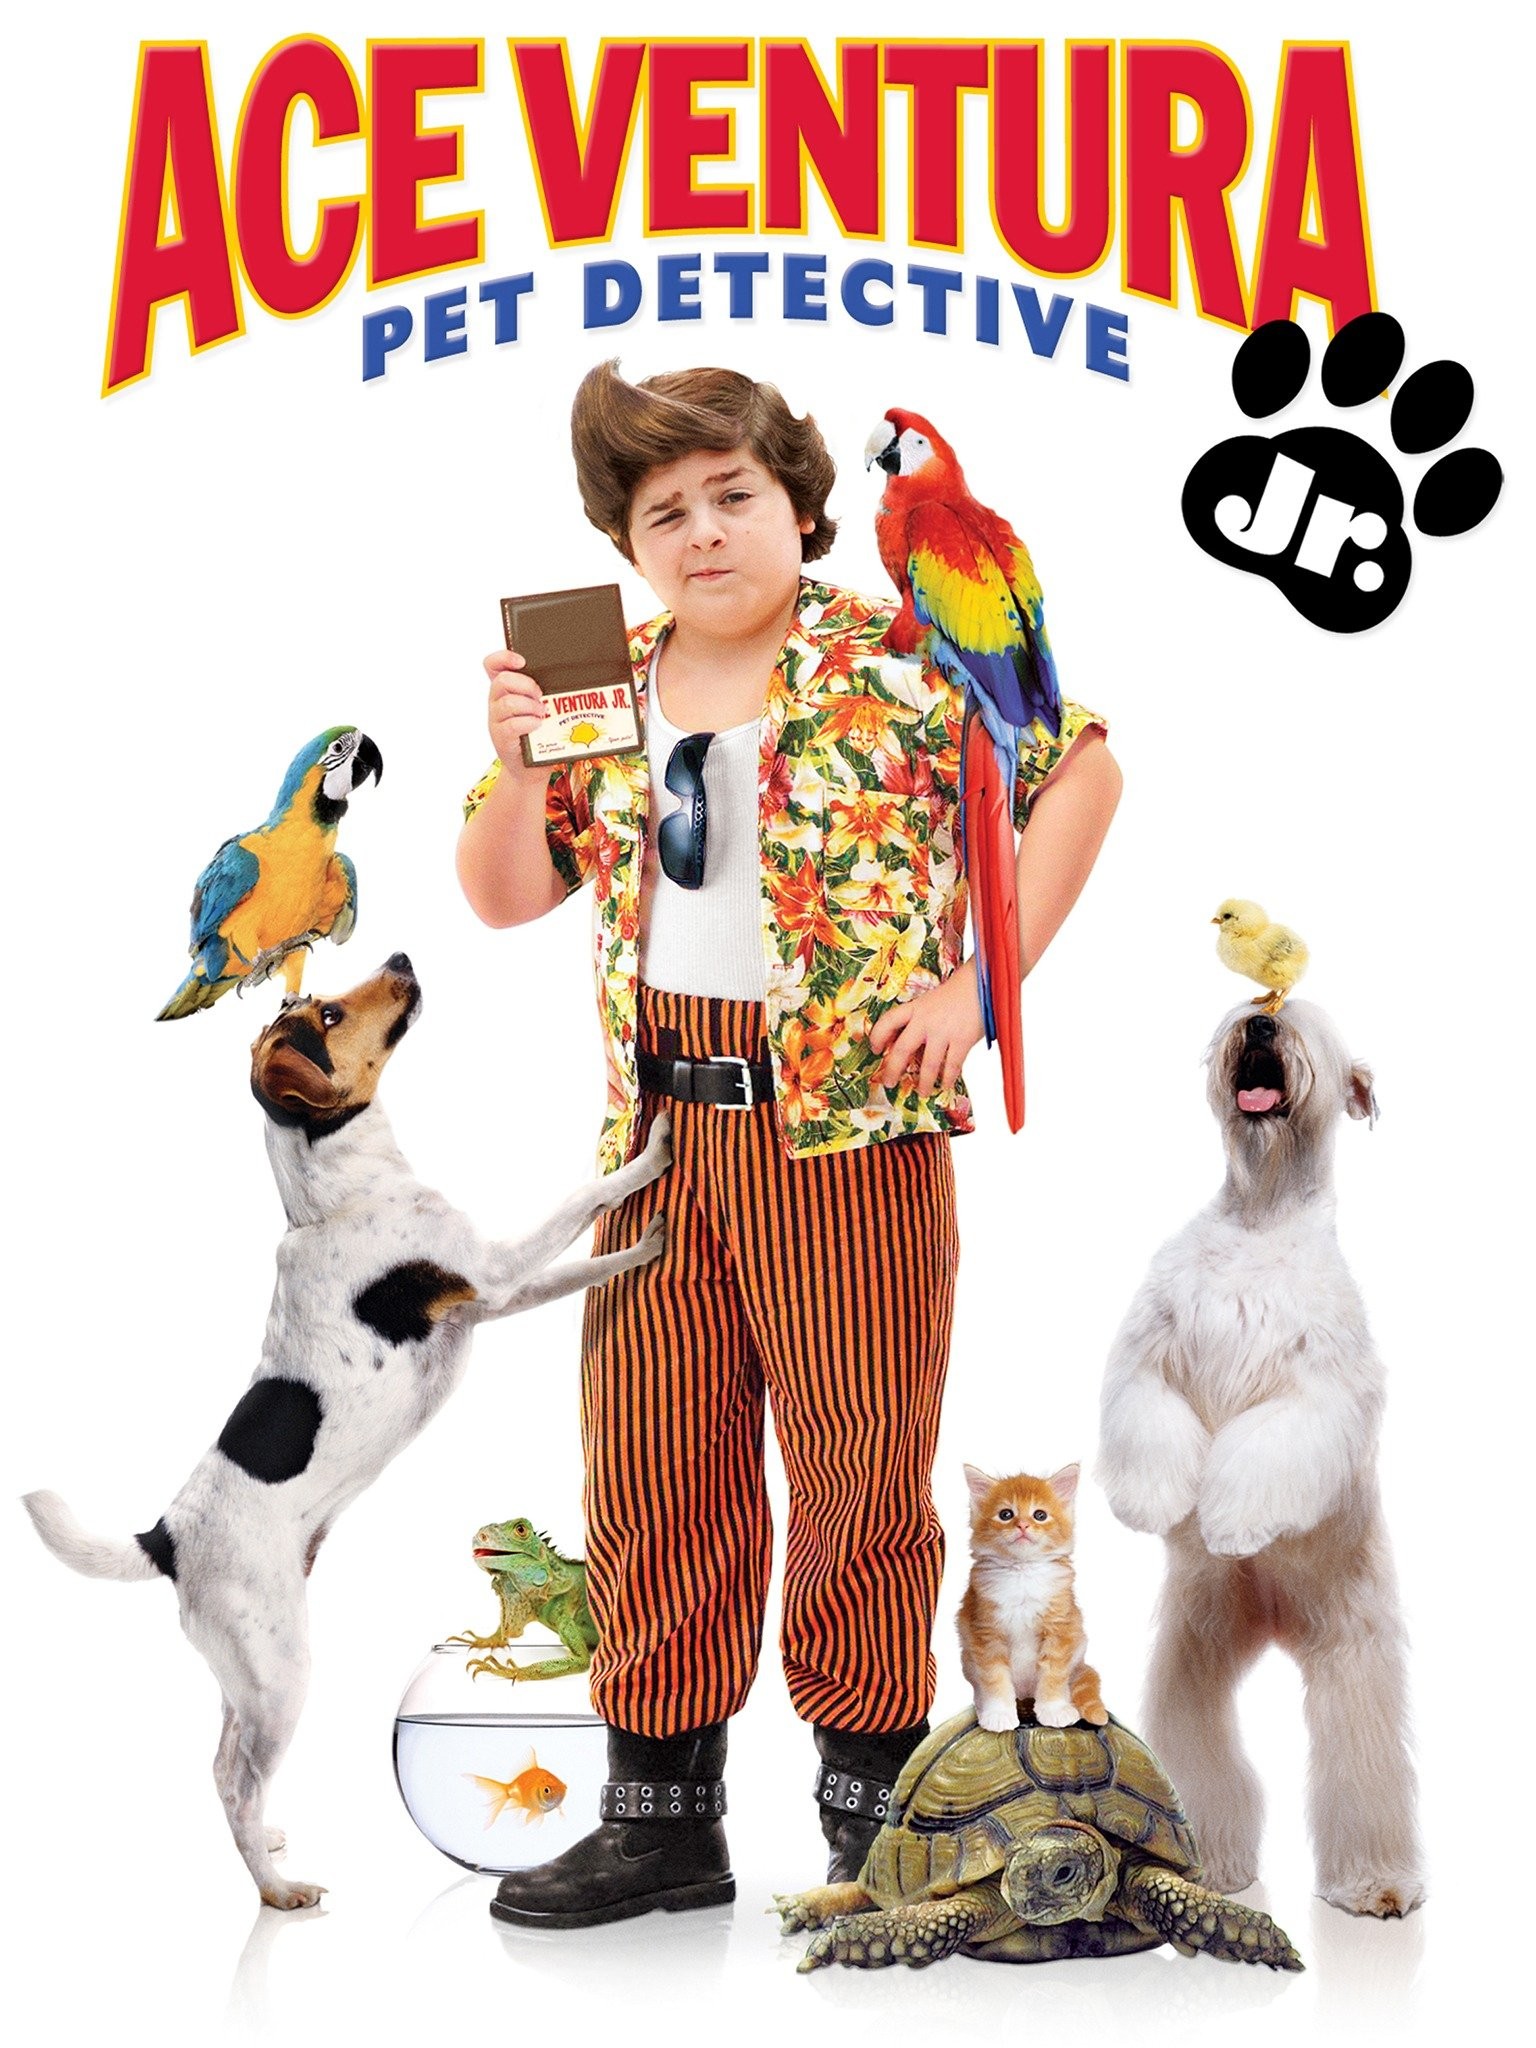 Ace Ventura Jr.: Pet Detective (2009 